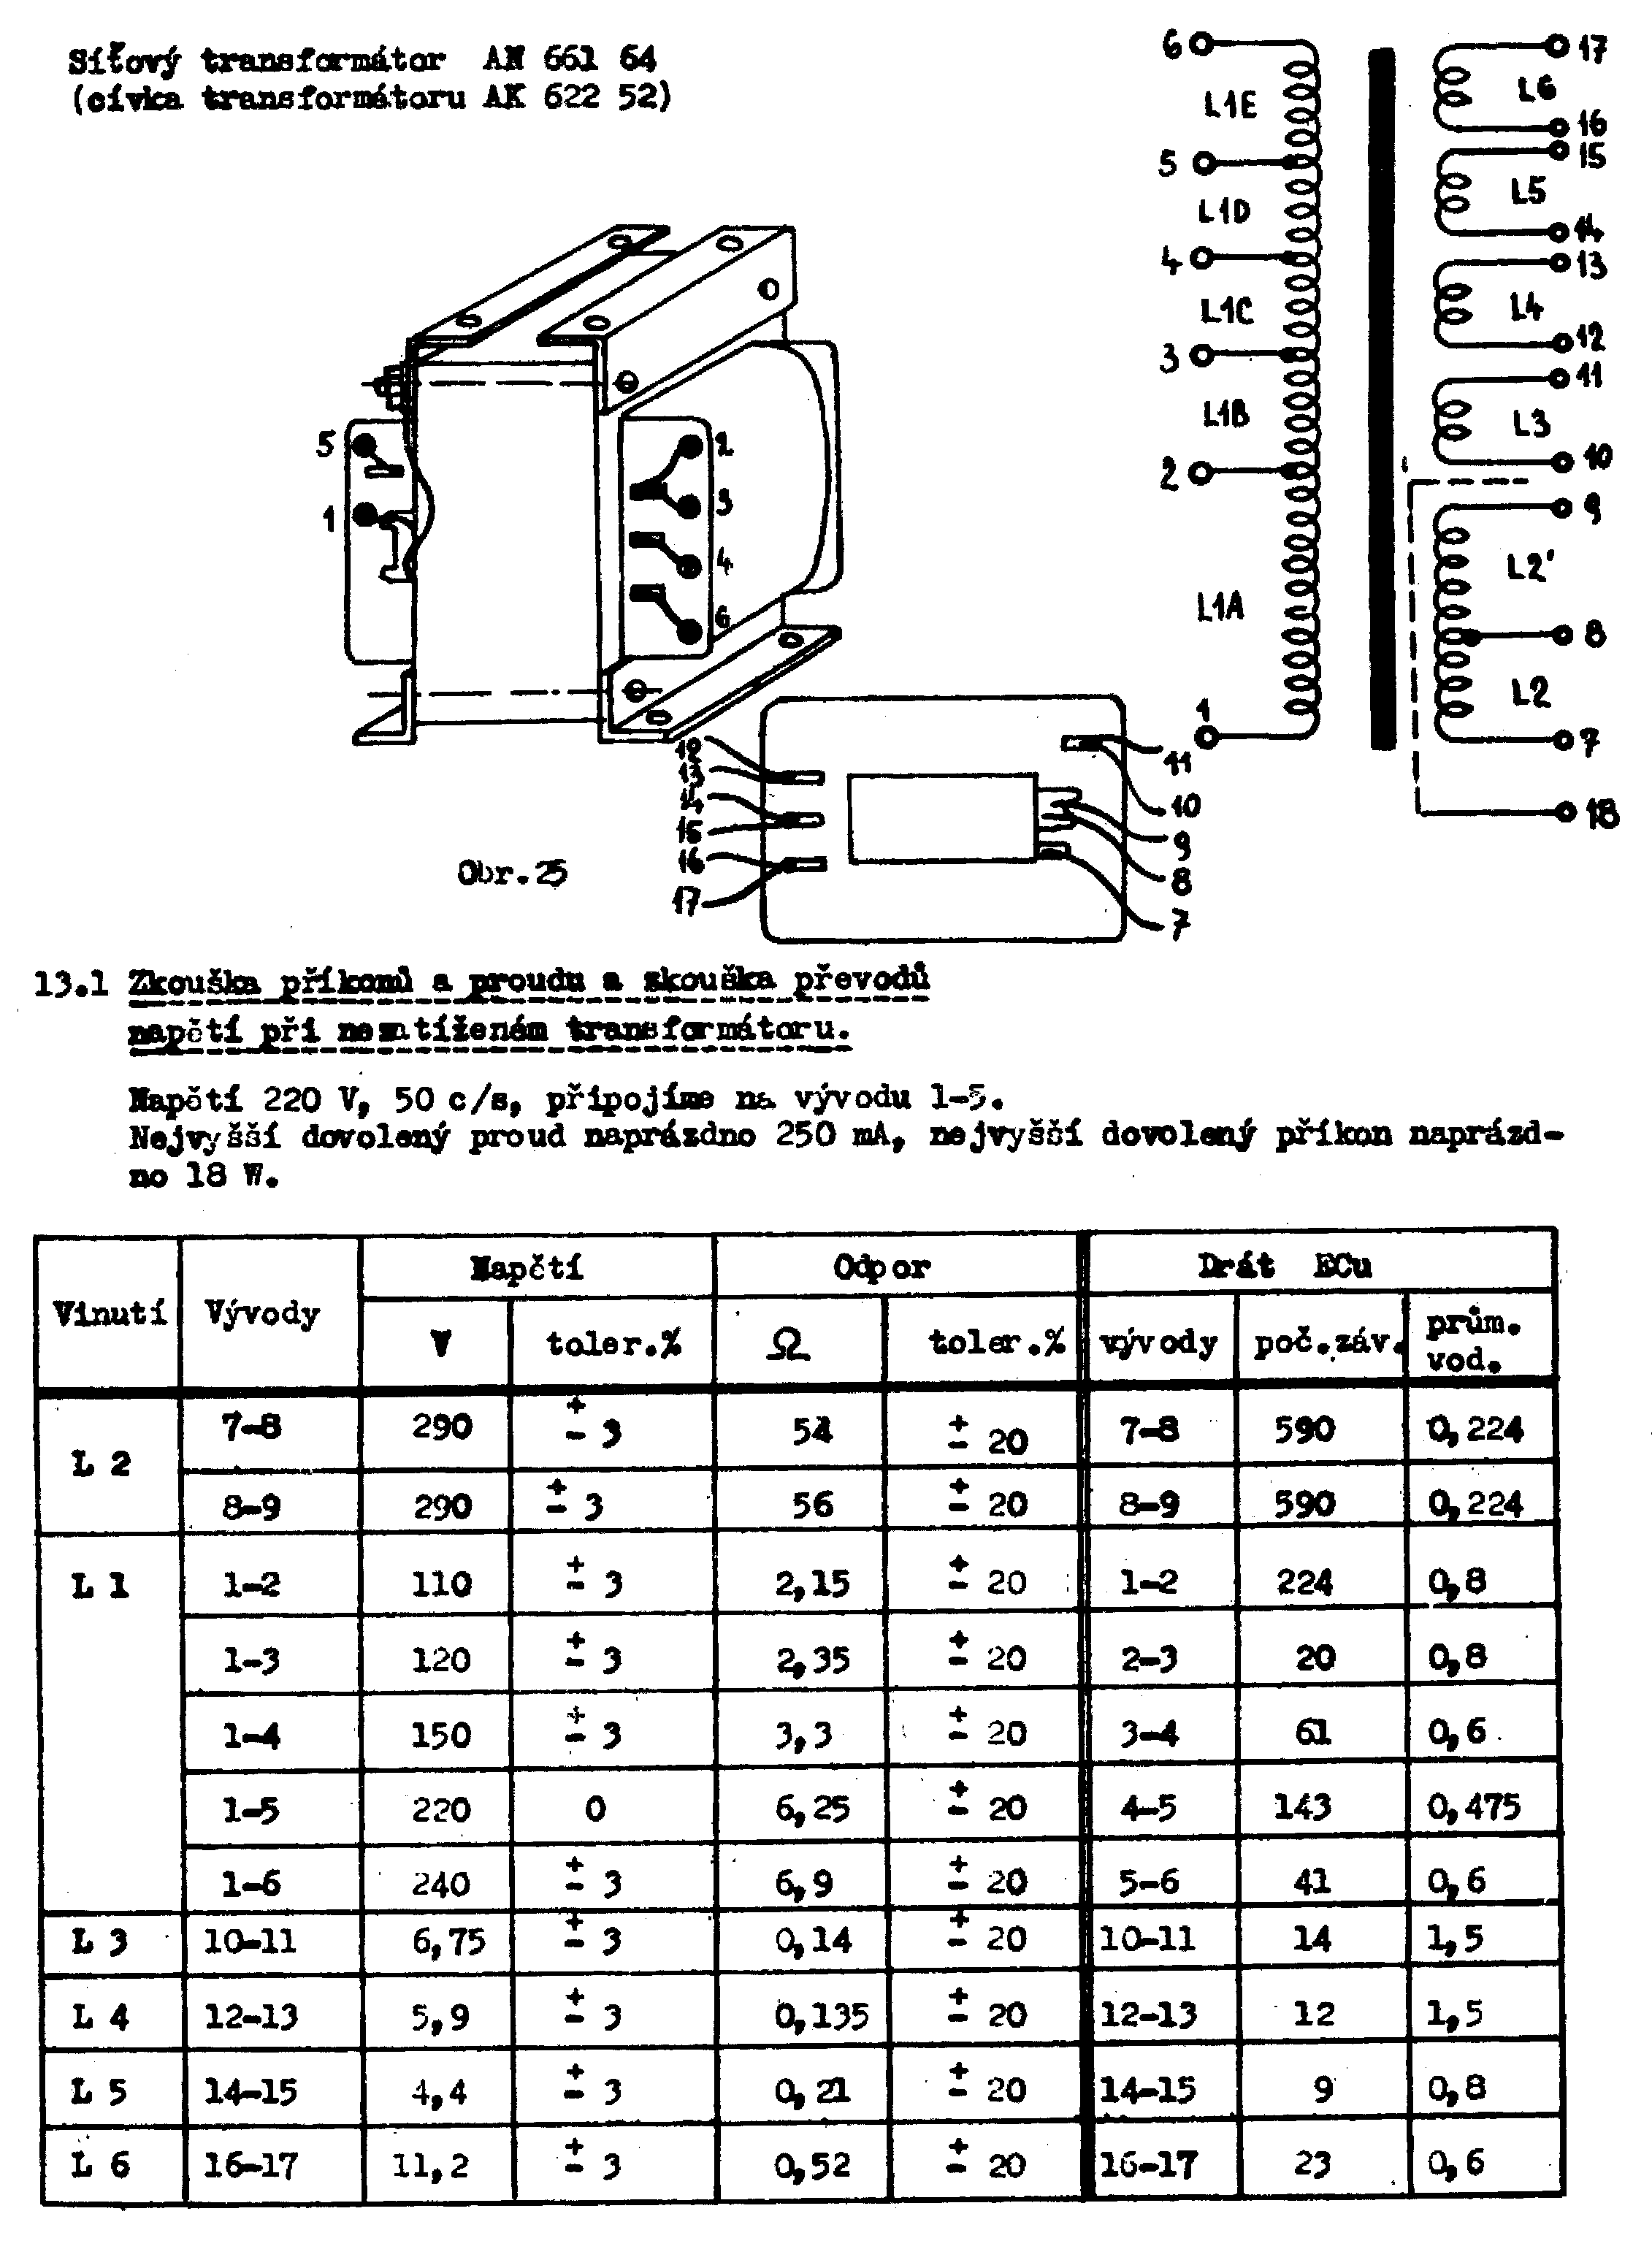 Navíjací predpis transformátora an66164 (kliknutím sa zobrazí v plnom rozlíšení)